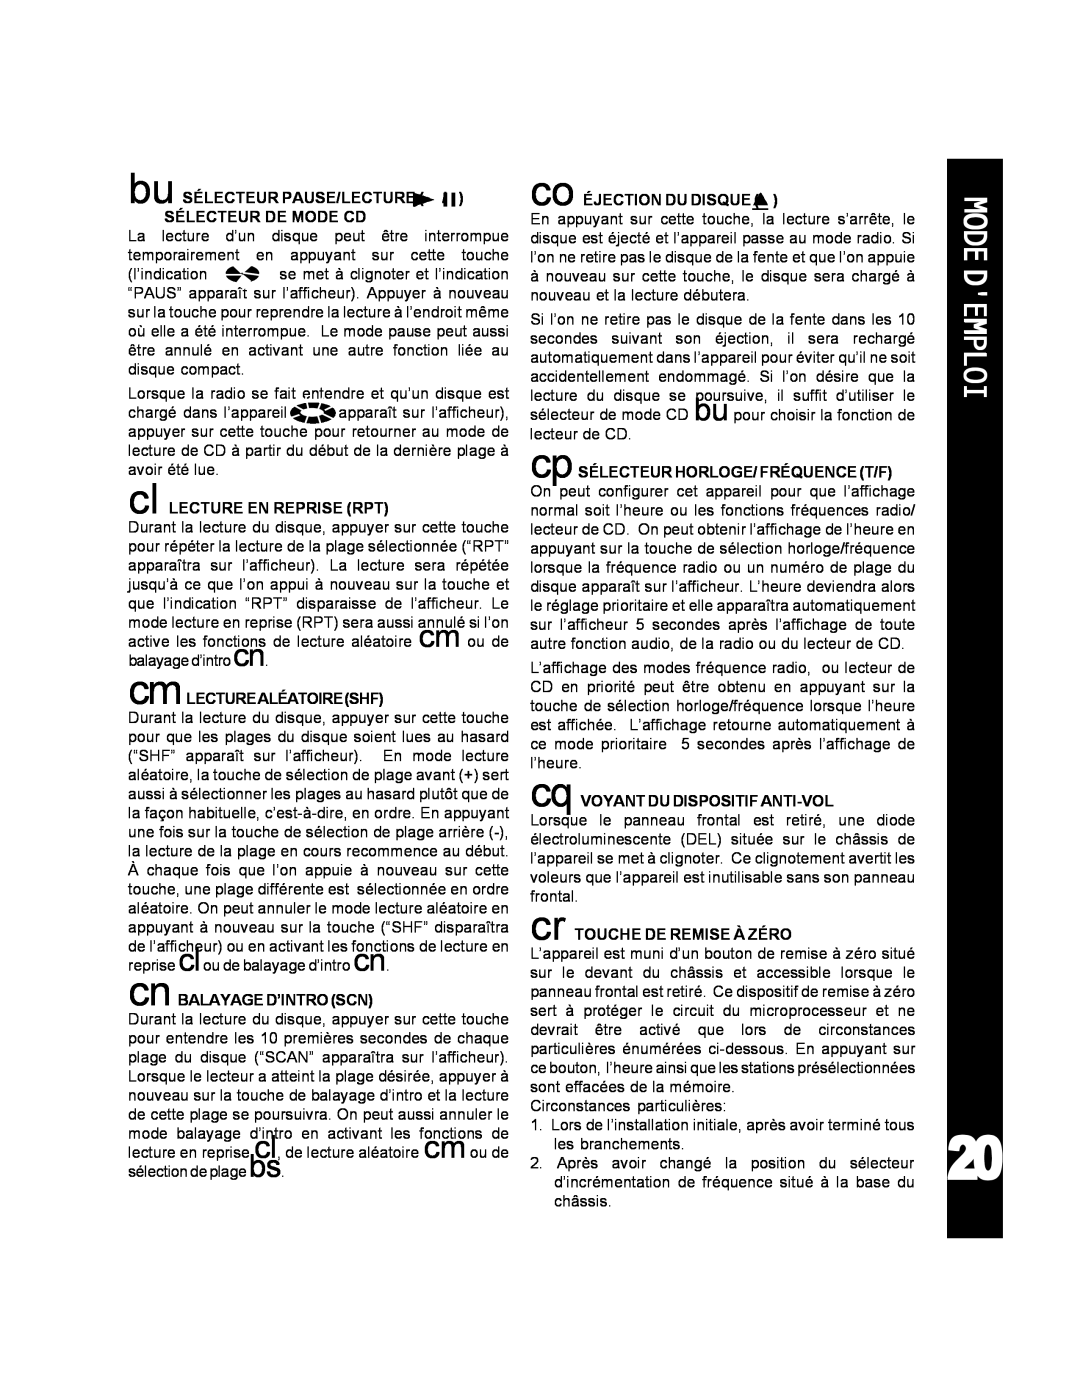 Audiovox ACD-25 manual Modedemploi, bu SÉLECTEUR PAUSE/LECTURE SÉLECTEUR DE MODE CD 